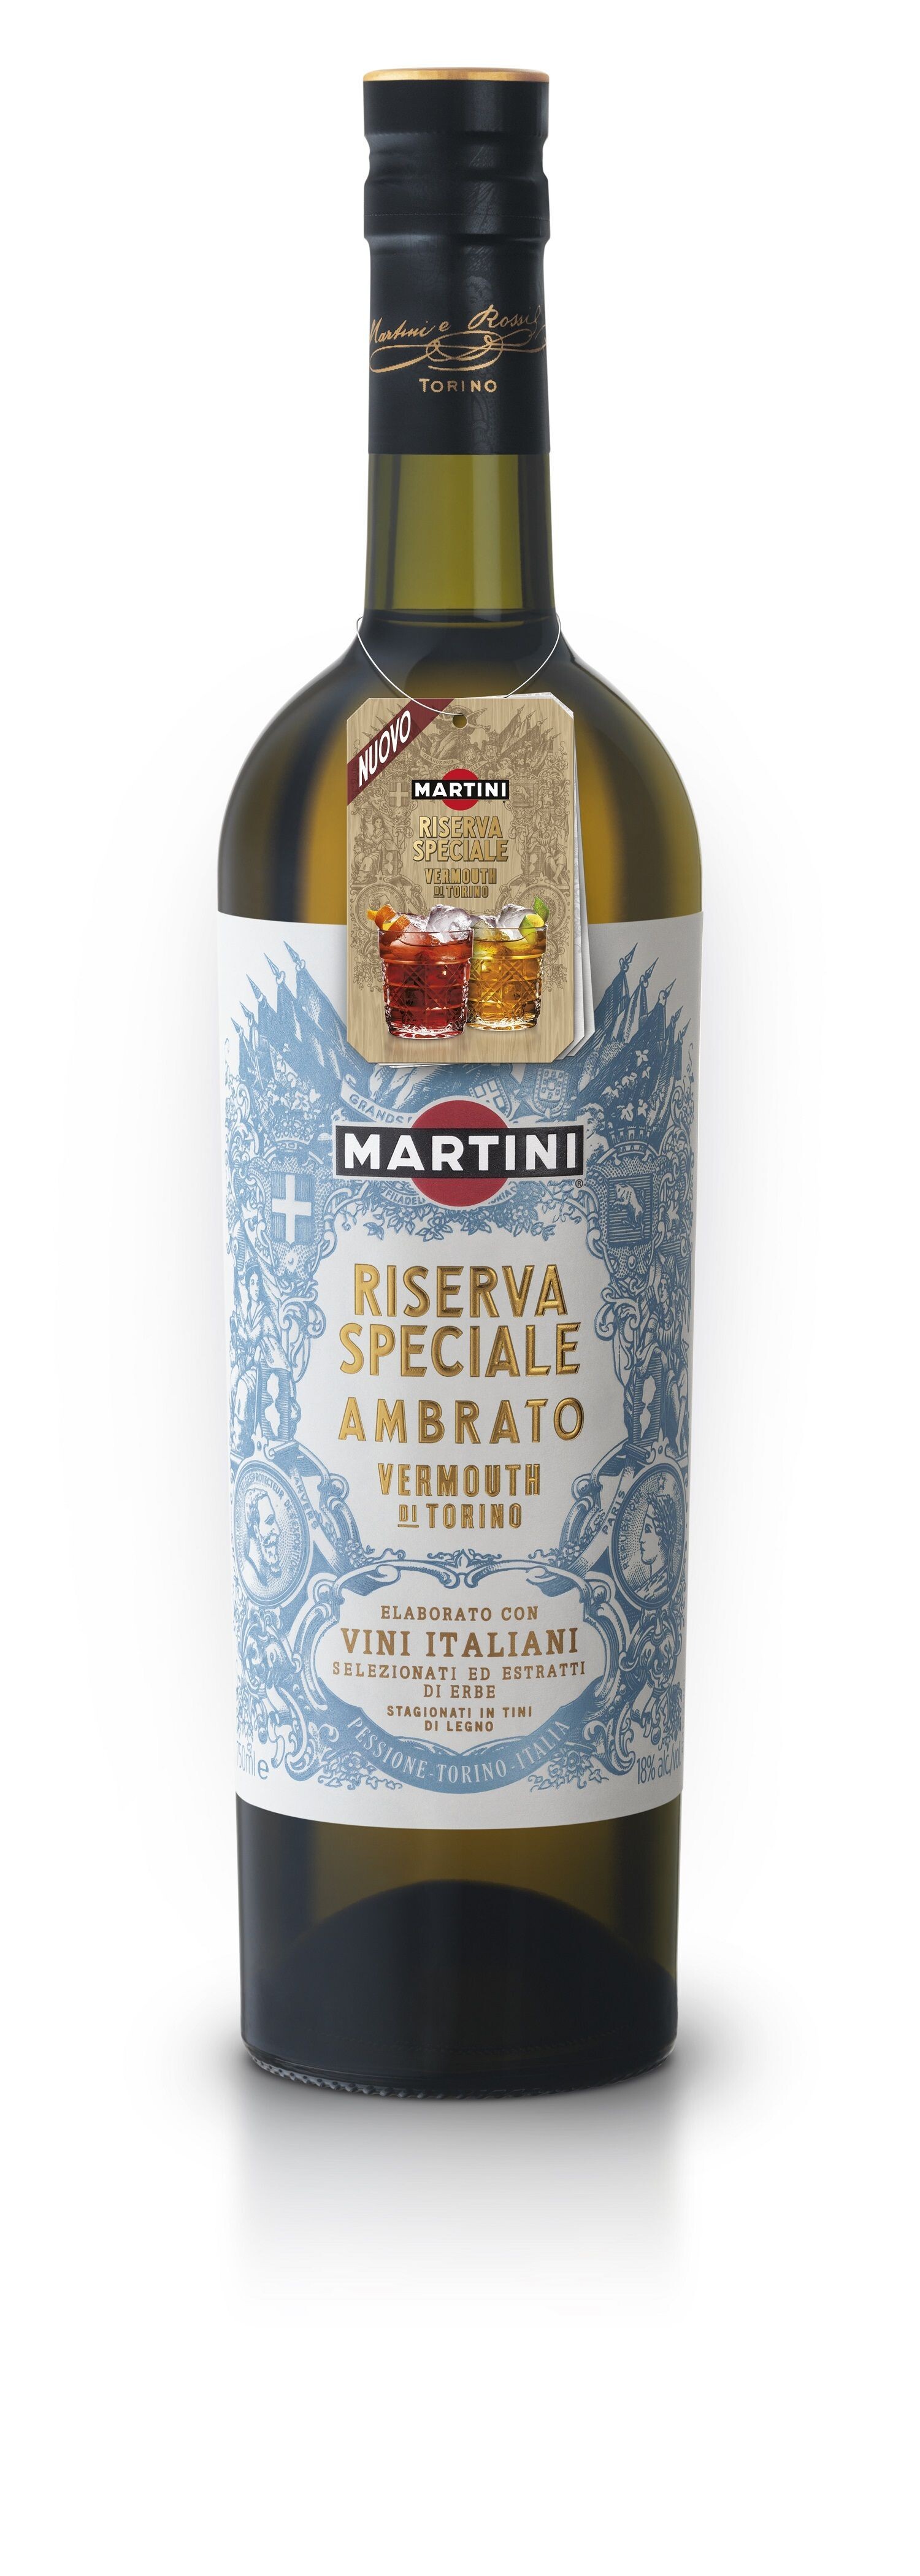 Martini Vermouth Riserva Speciale Ambrato 75cl 18%